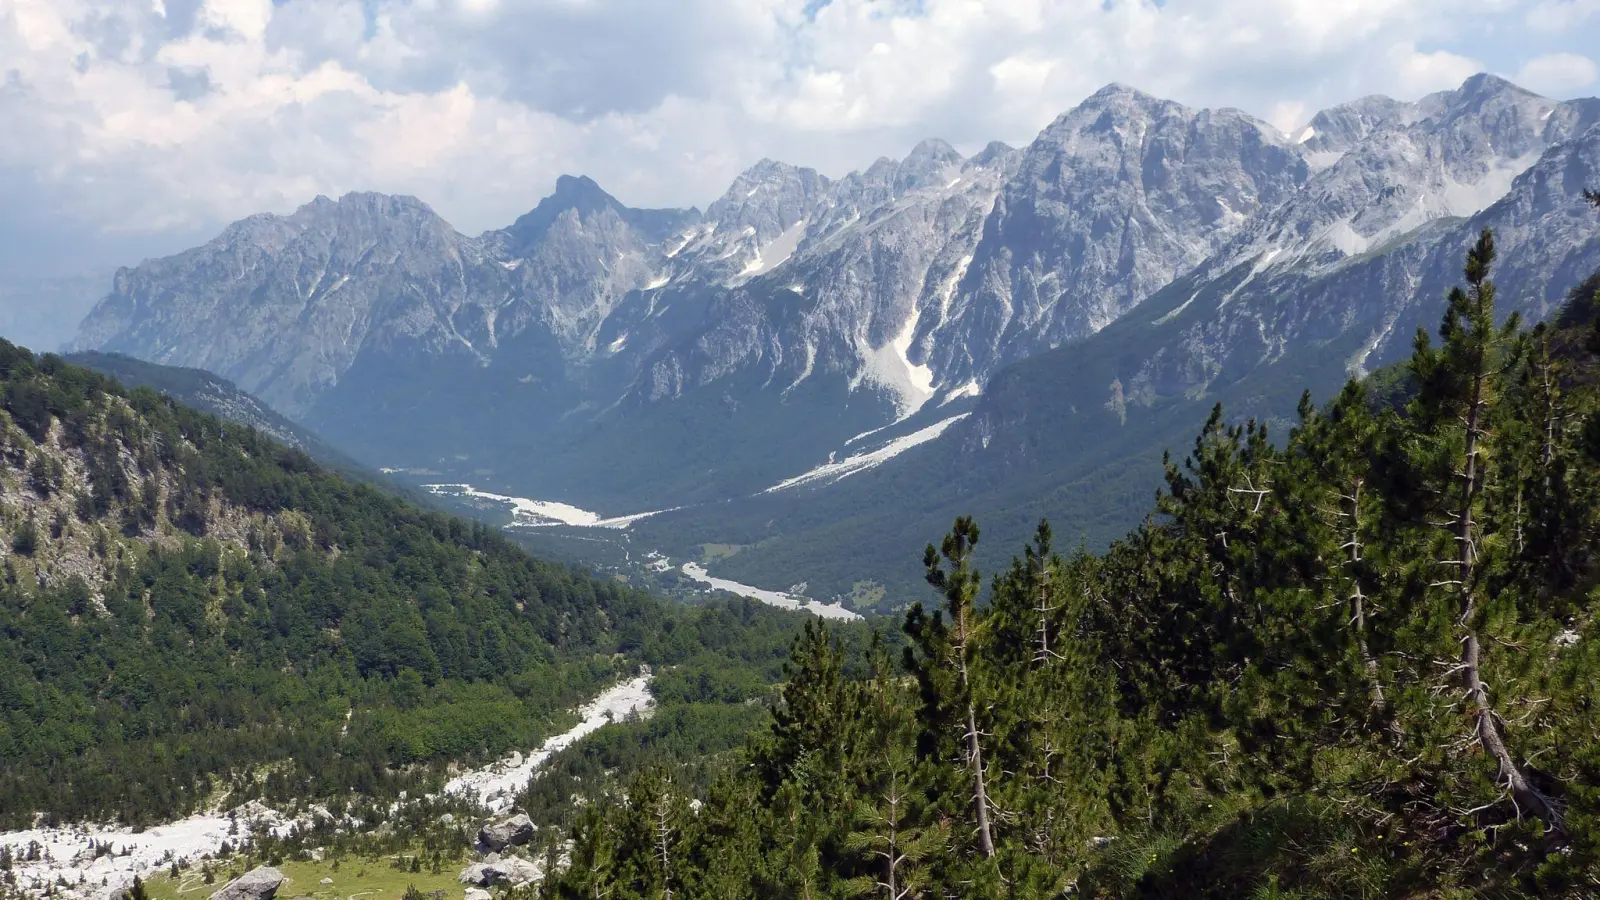 Natur pur: Albanien lockt mit unberührten Landschaften. (Foto: Florian Sanktjohanser/dpa-tmn)